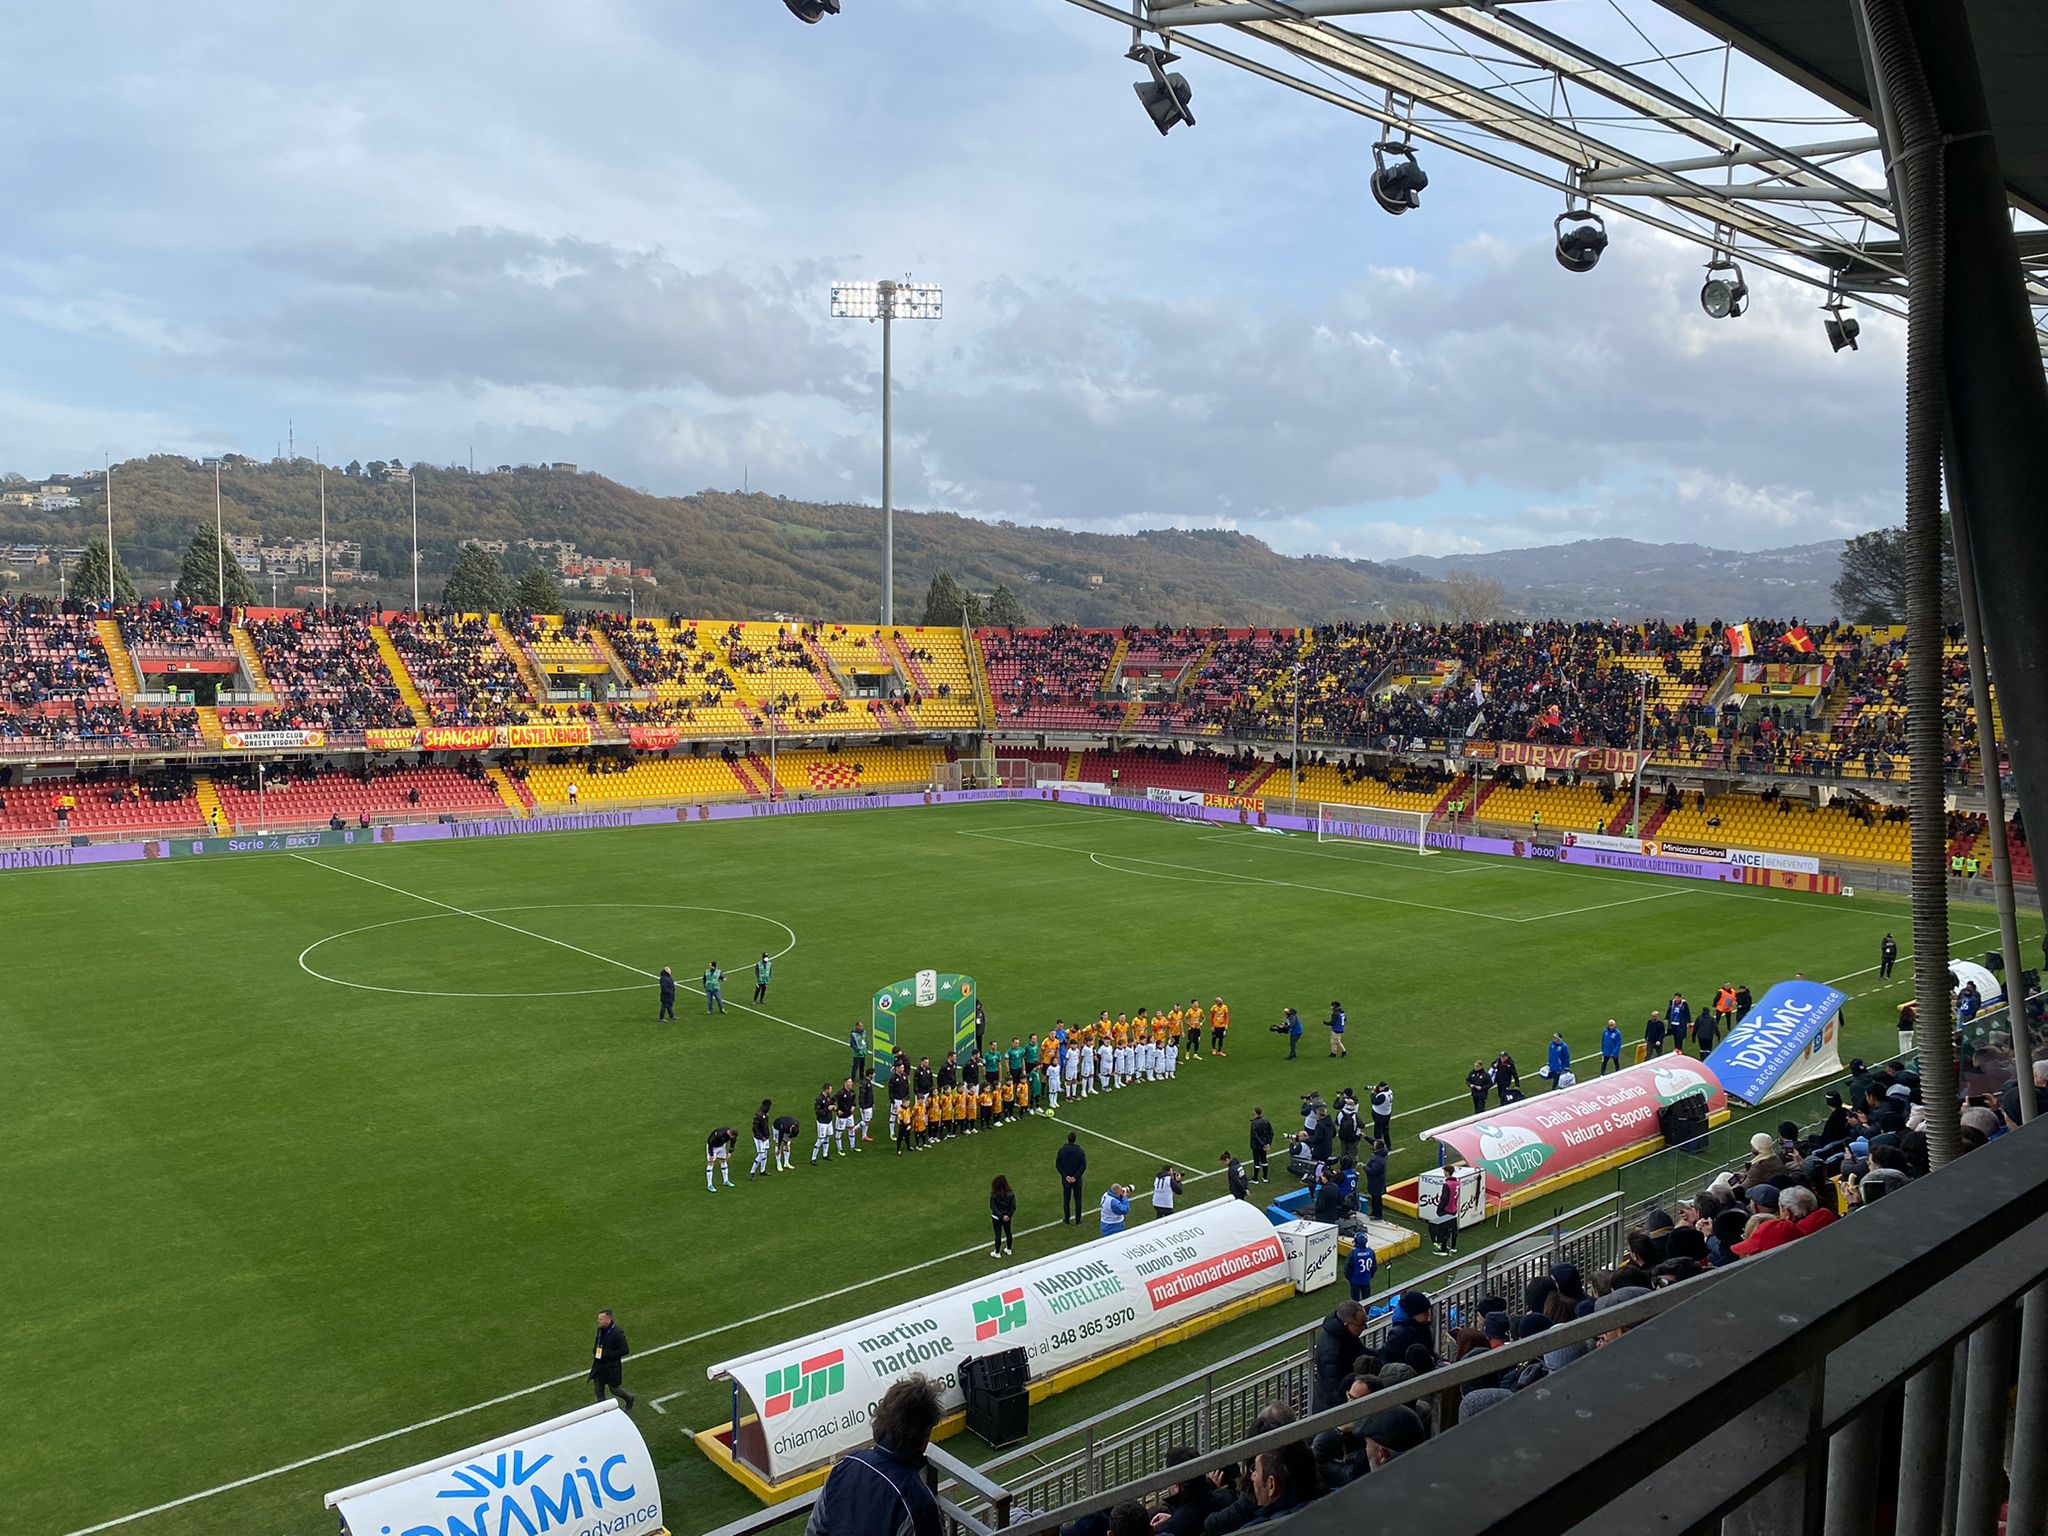 Benevento-Cittadella: 1-0. La Strega torna finalmente a vincere al “Vigorito”